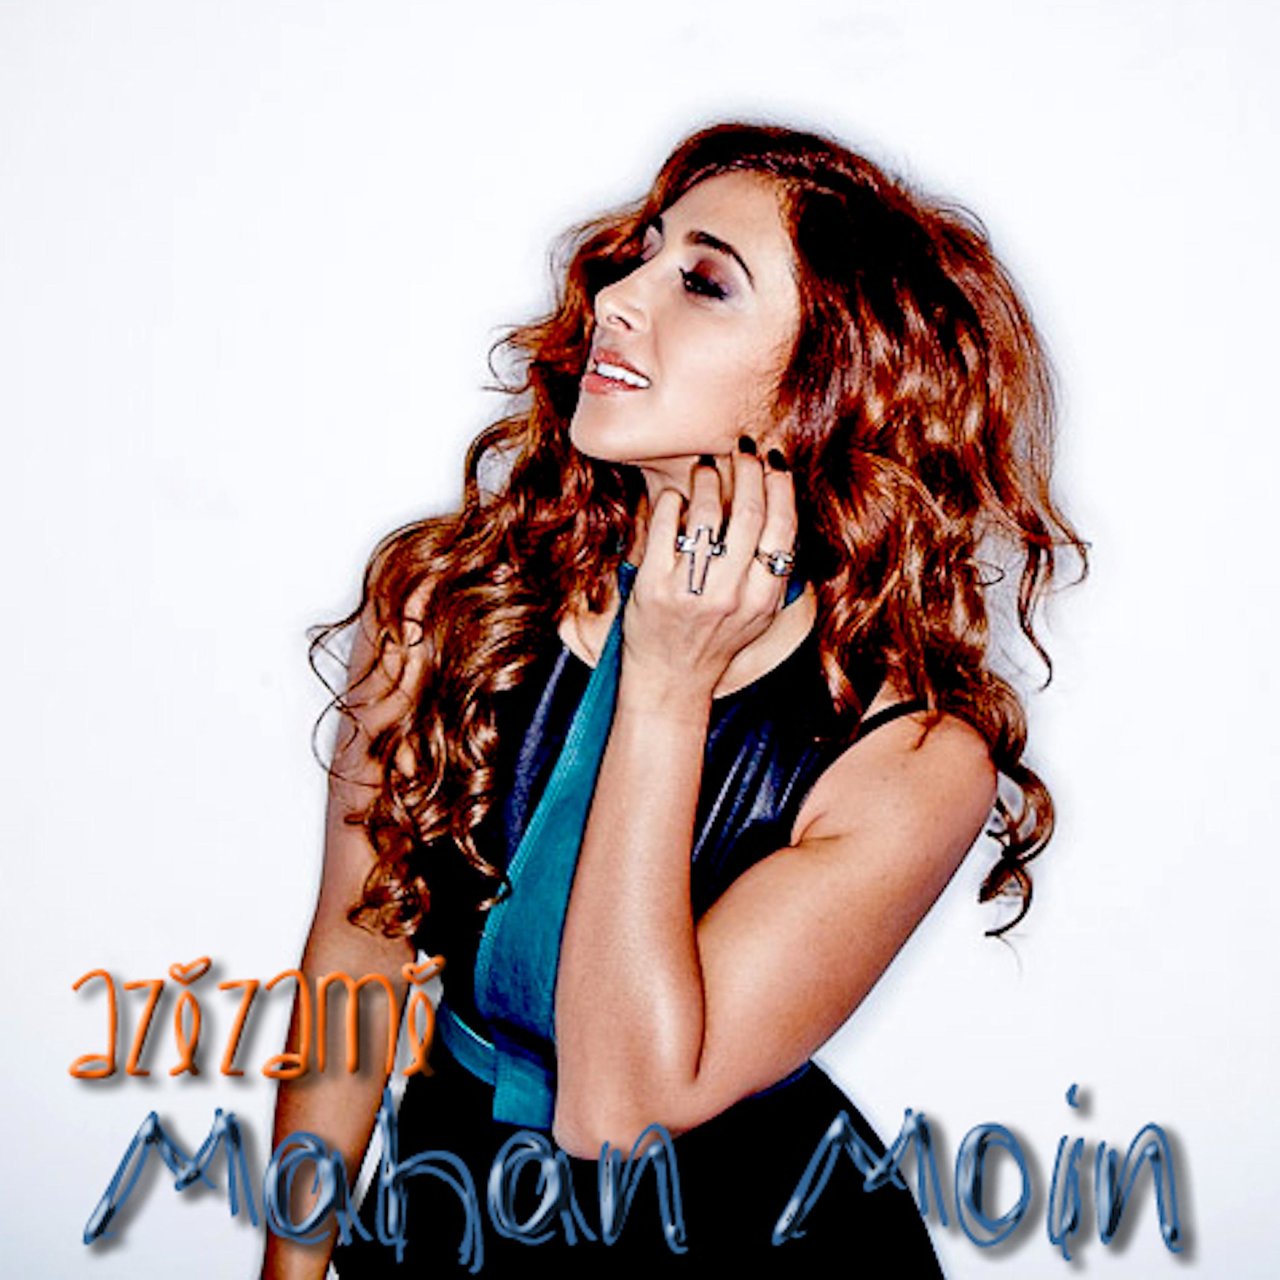 Mahan Moin — Azizami cover artwork